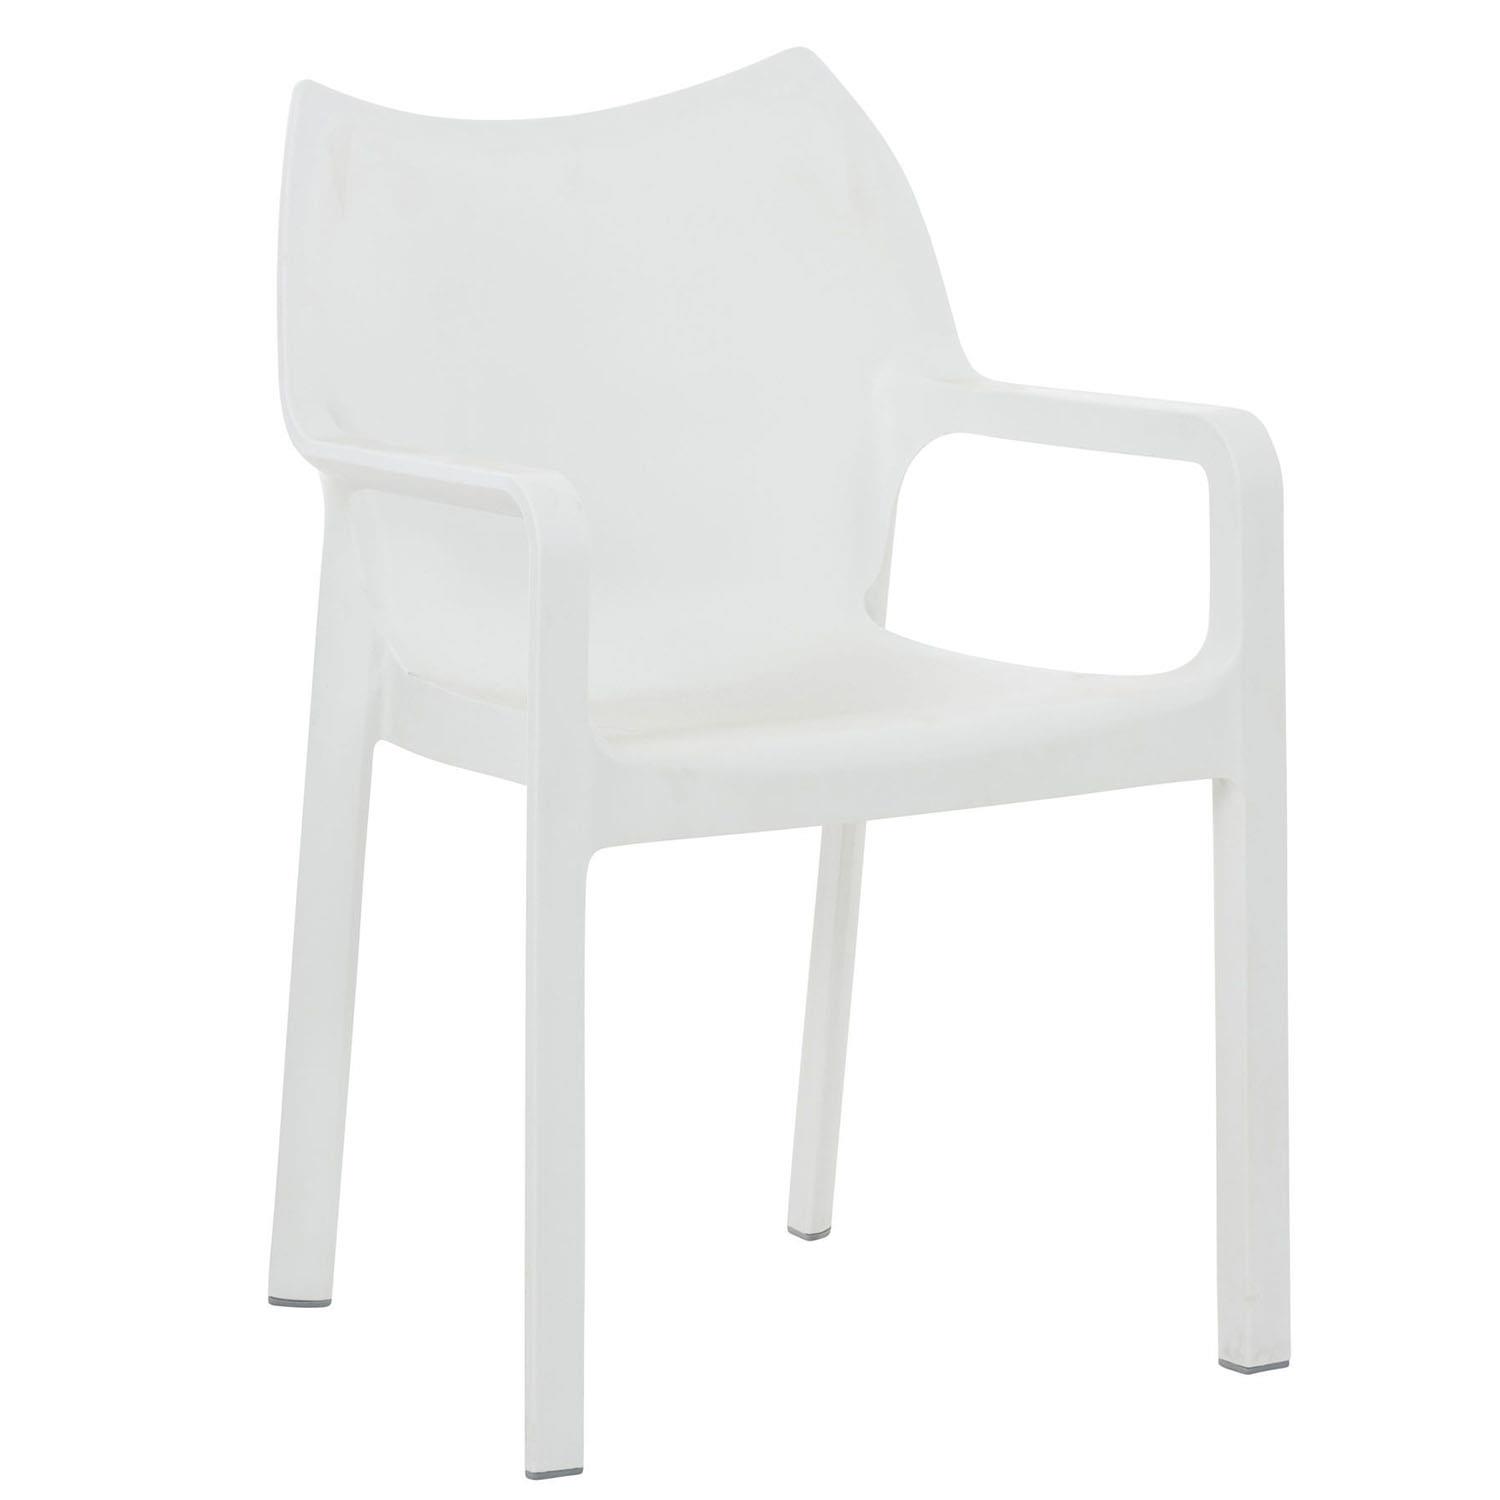 Cadeira de Visita RAMOS, Apoia Braços Integrados, Moderno e Resistente, Cor Branco